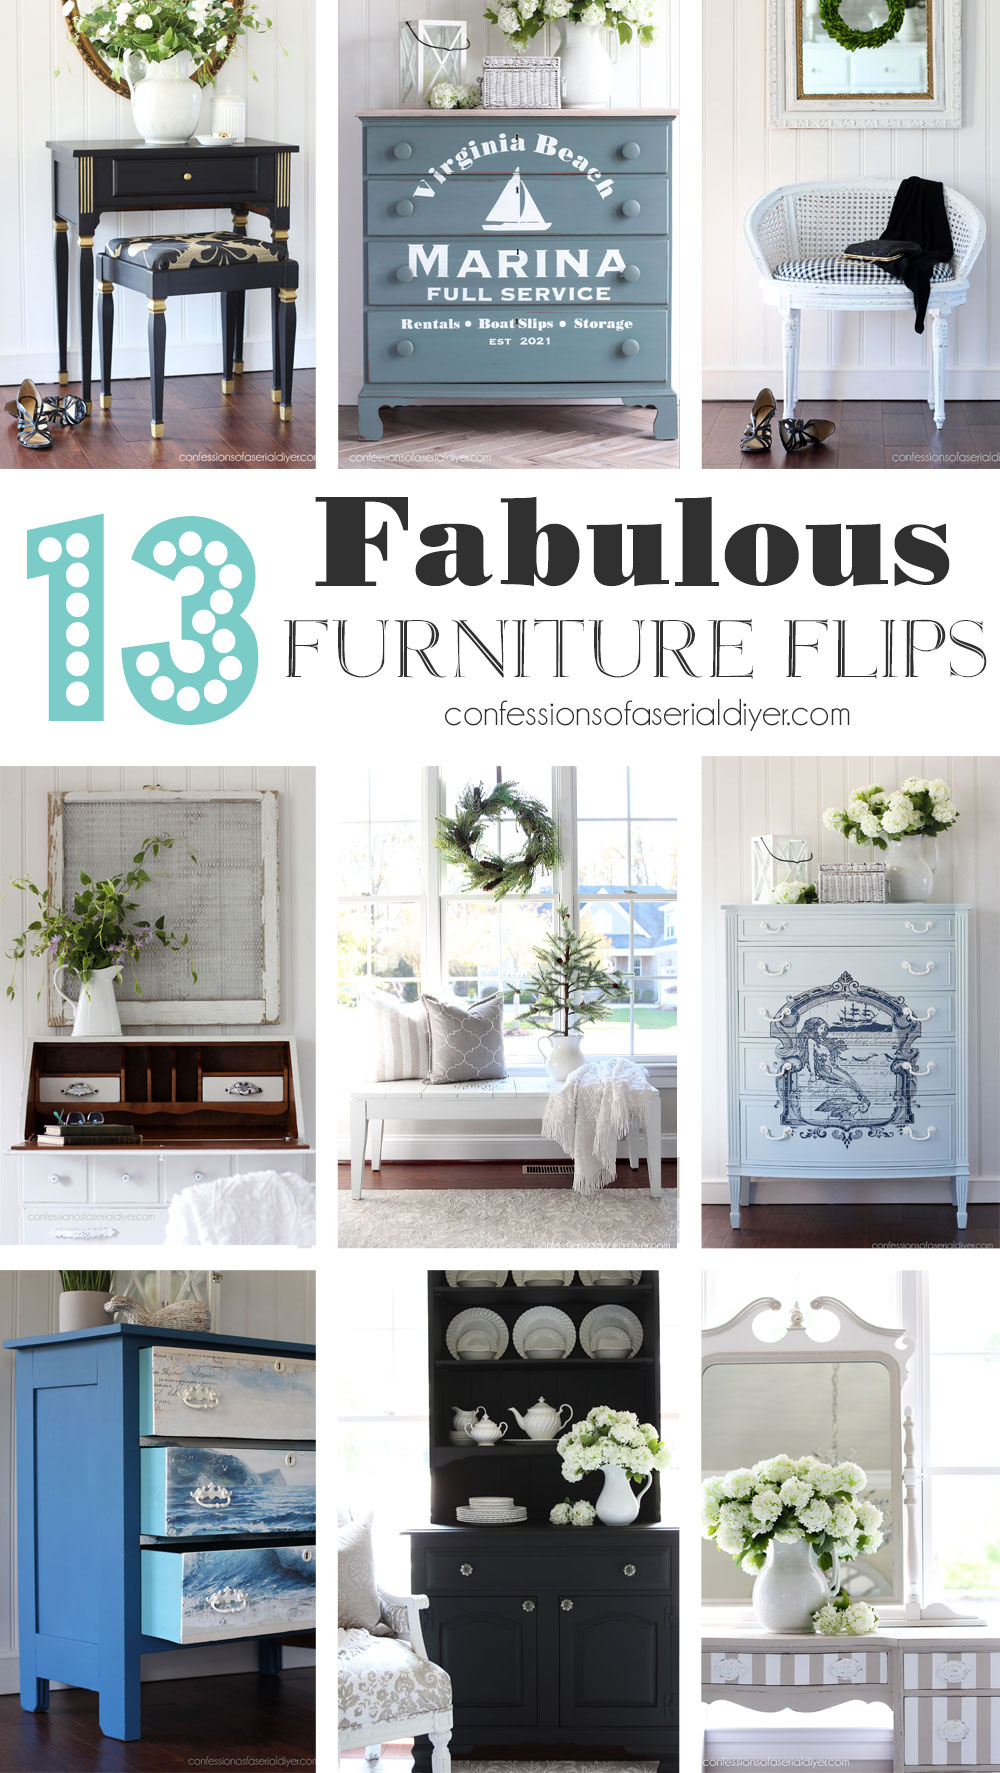 Fabulous furniture flips